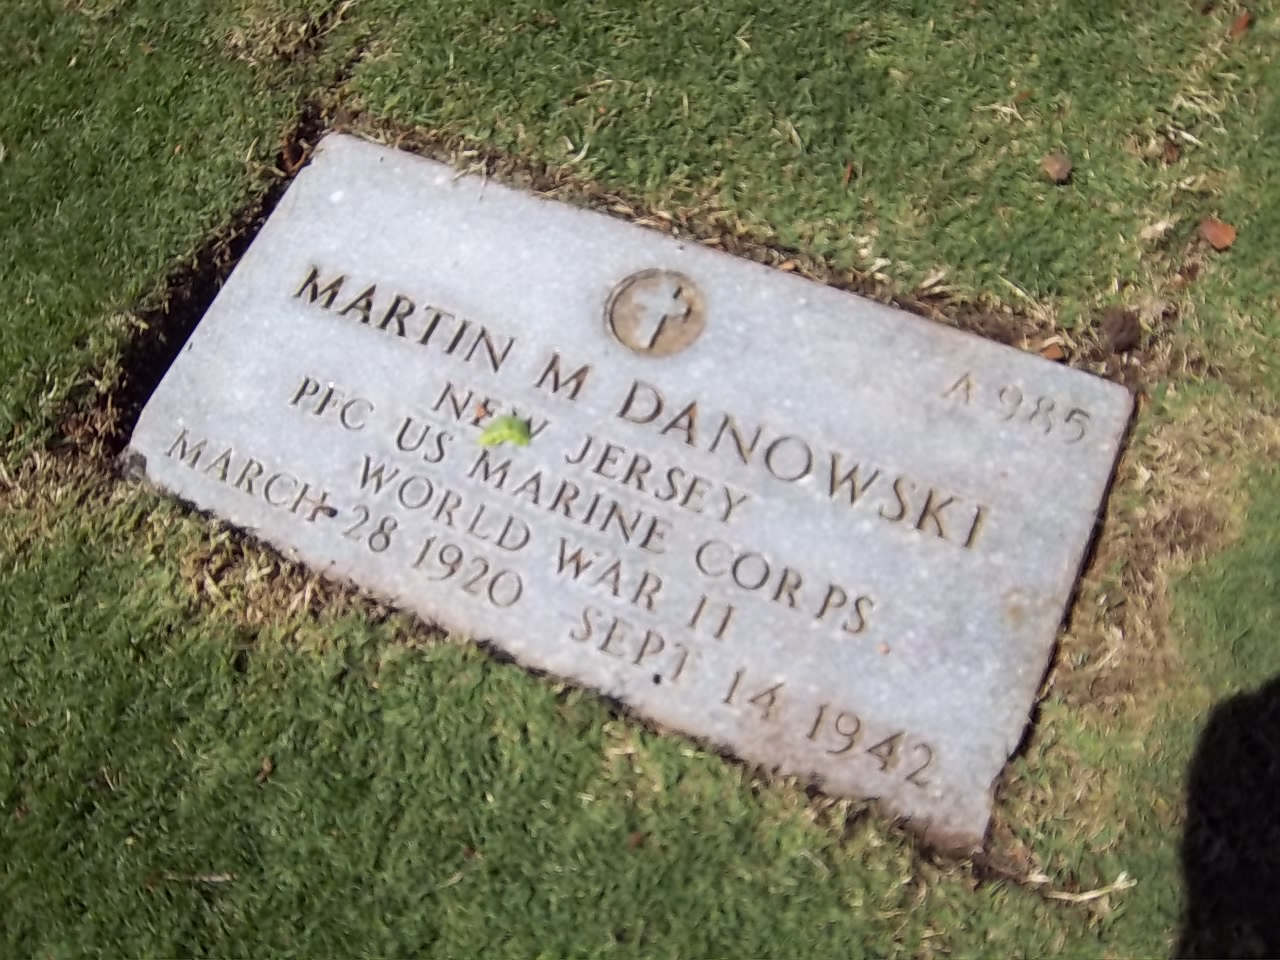 M. Danowski (Grave)